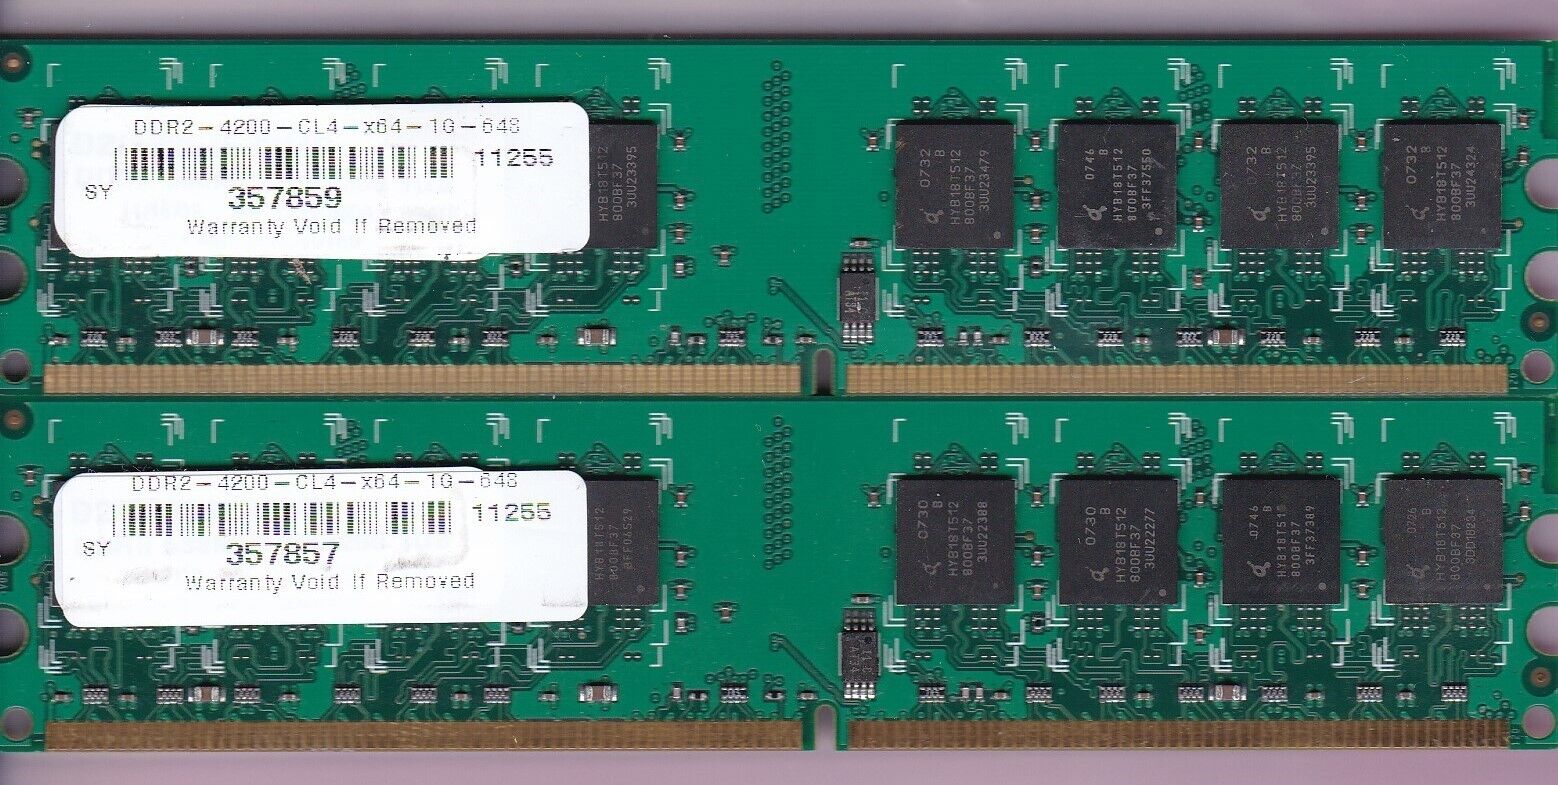 2GB 2x1GB QIMONDA PC2-4200 DDR2-533 DDR2-4200-CL4-x64-1G-648 DESKTOP MEMORY KIT